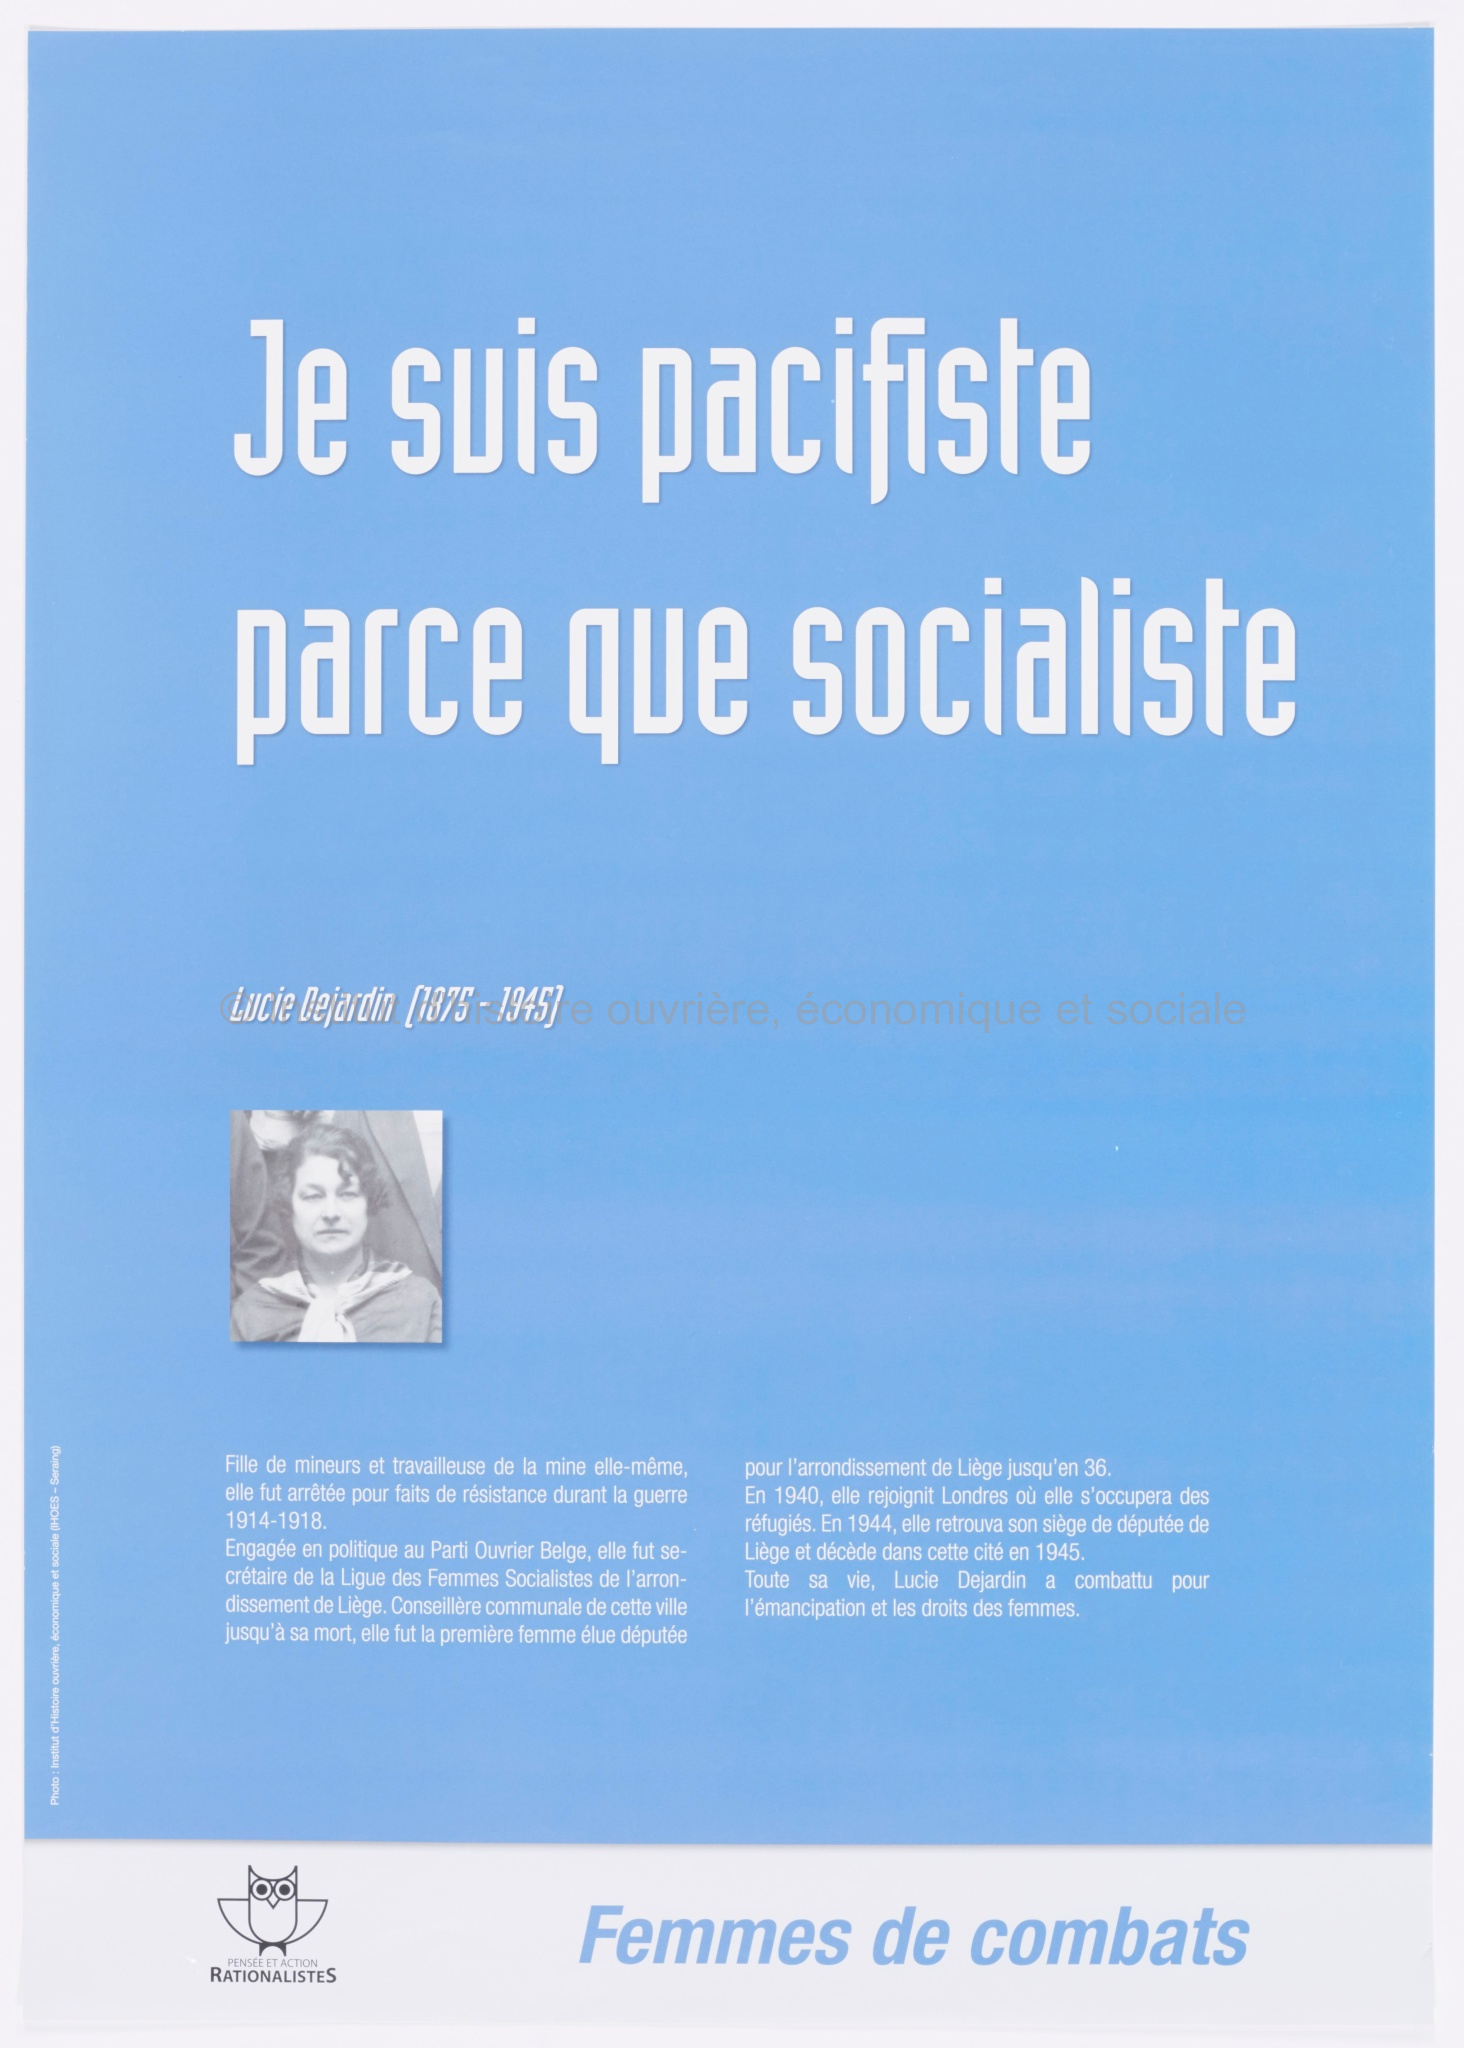 Je suis pacifiste parce que socialiste : Lucie Dejardin (1875-1945)